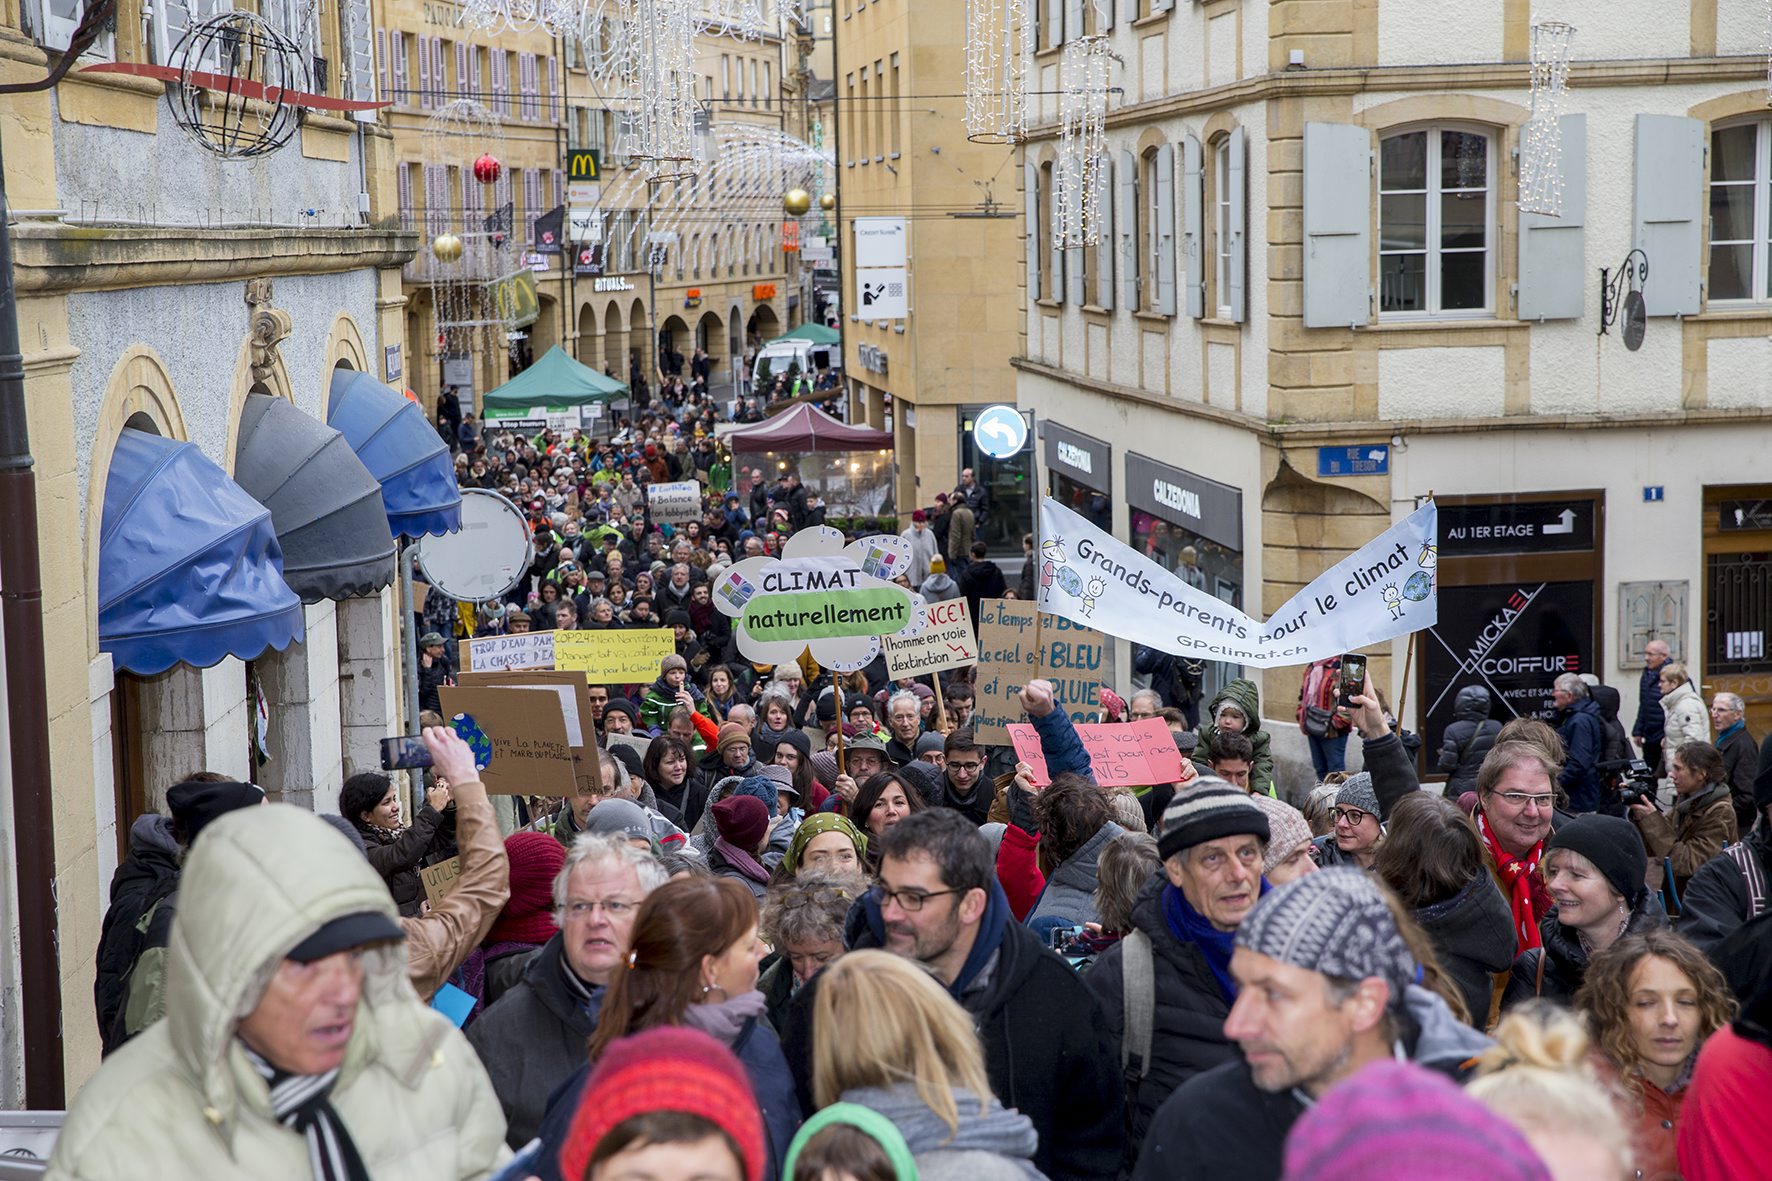 La Marche pour le climat a attiré près d'un millier de manifestants, selon les organisateurs.